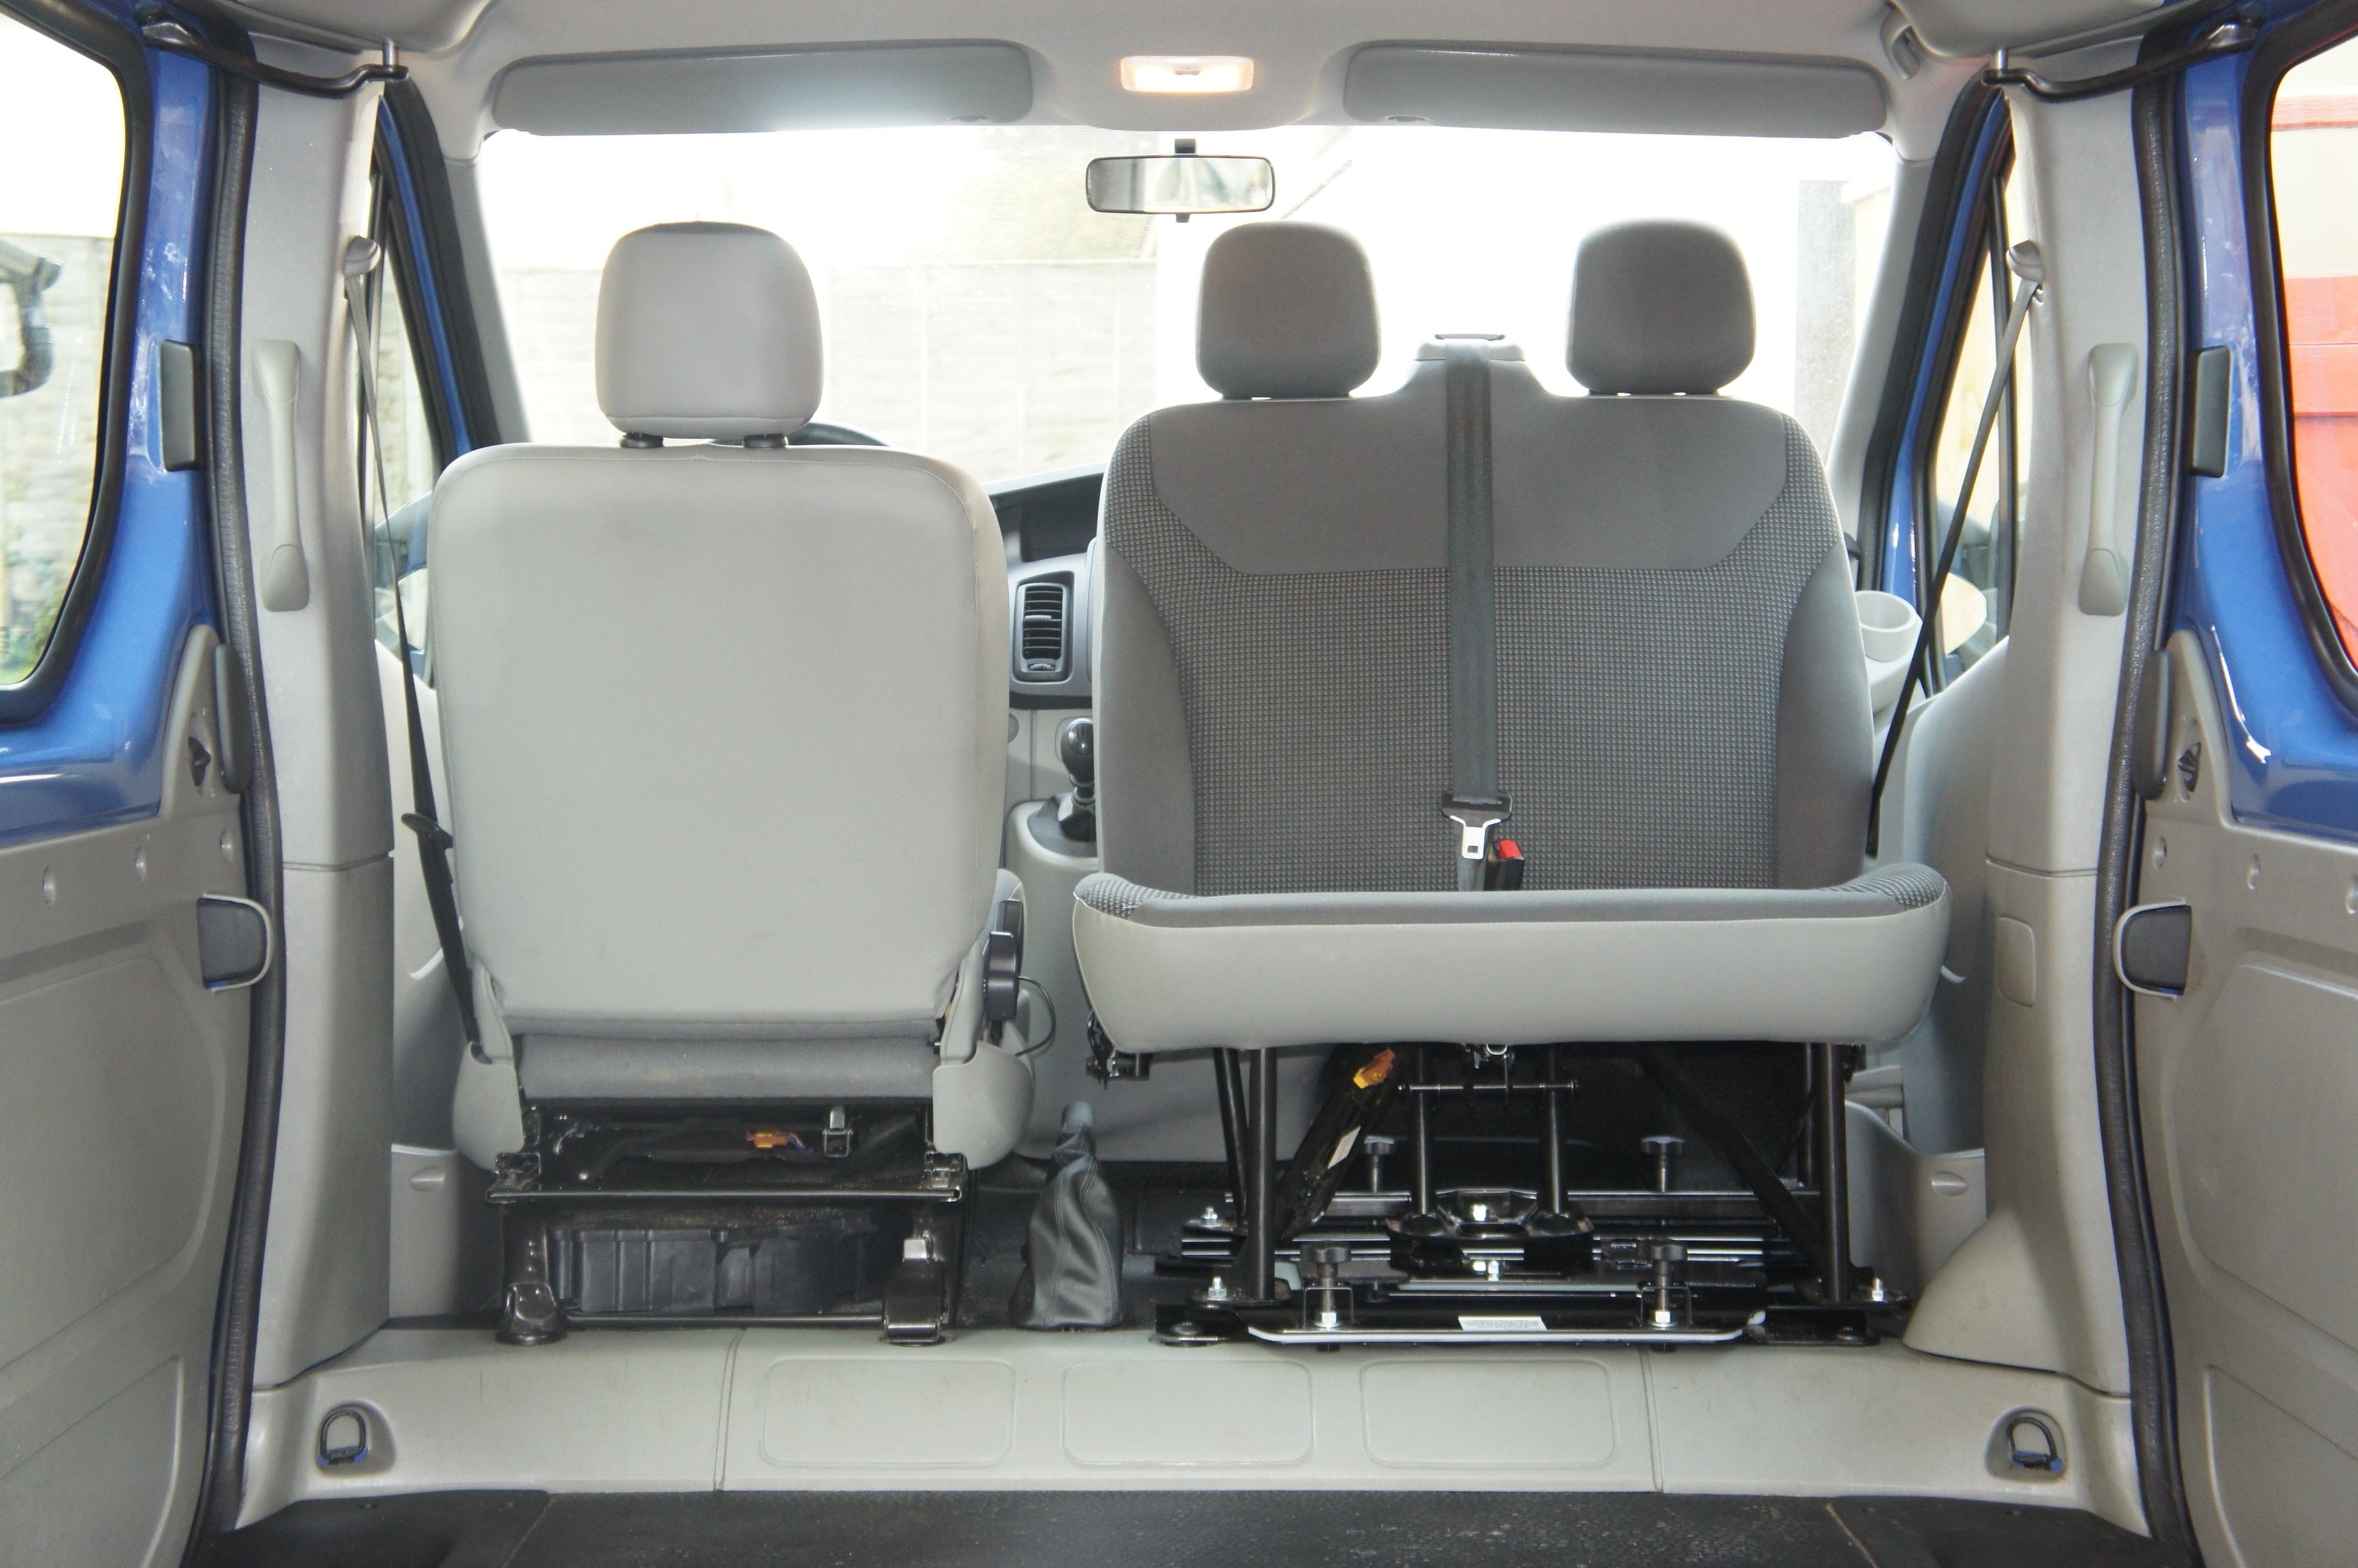 Kiravans Nissan NV300/Primastar 2014+ Double Passenger Seat Swivel